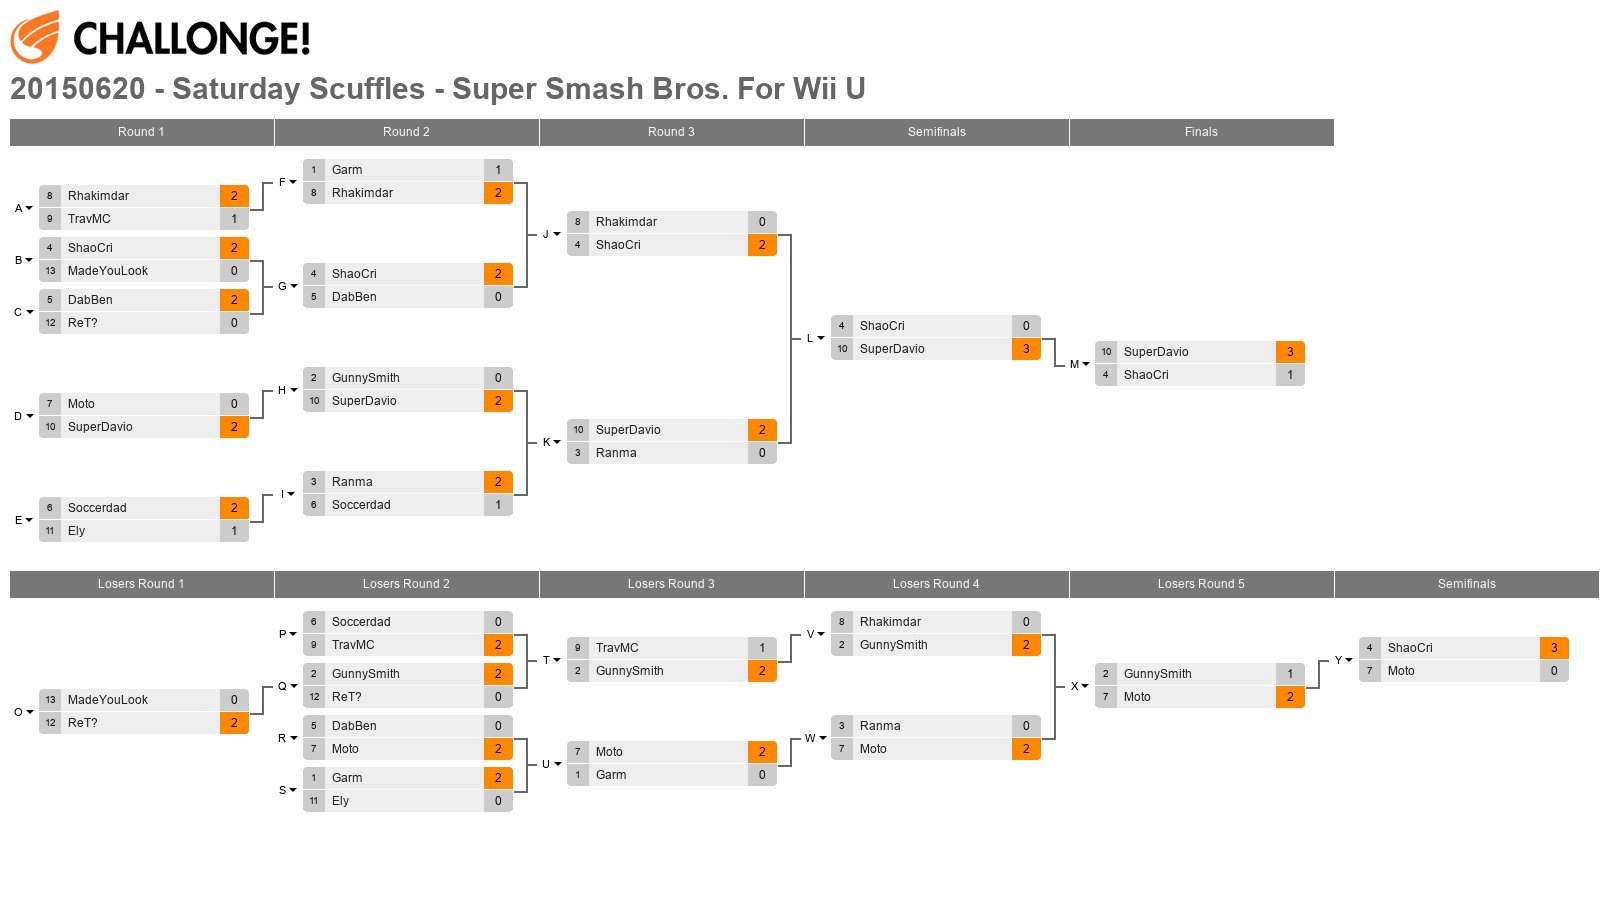 20150620 - Saturday Scuffles - Super Smash Bros. For Wii U